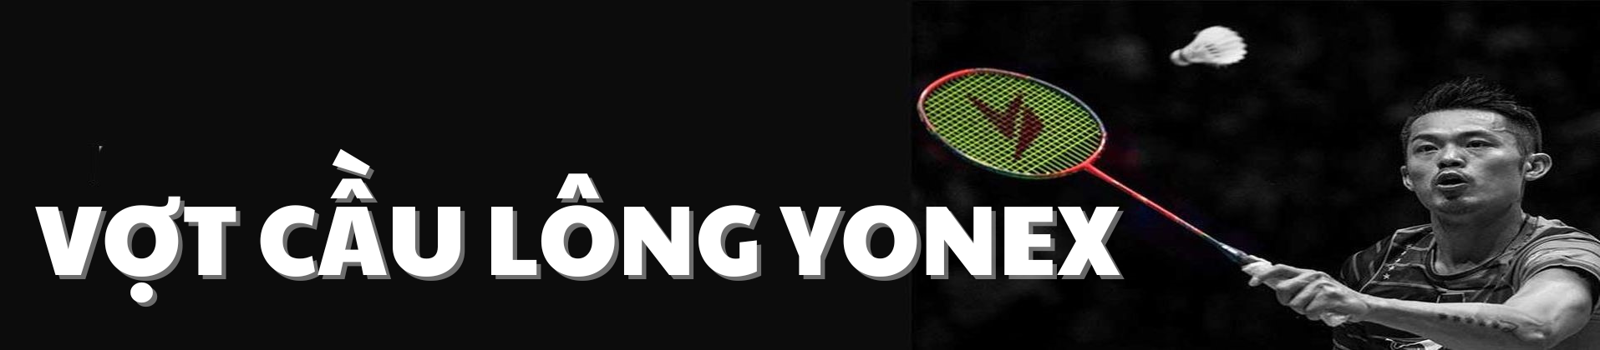 Vợt cầu lông Yonex có phải lựa chọn xứng đáng cho lông thủ?